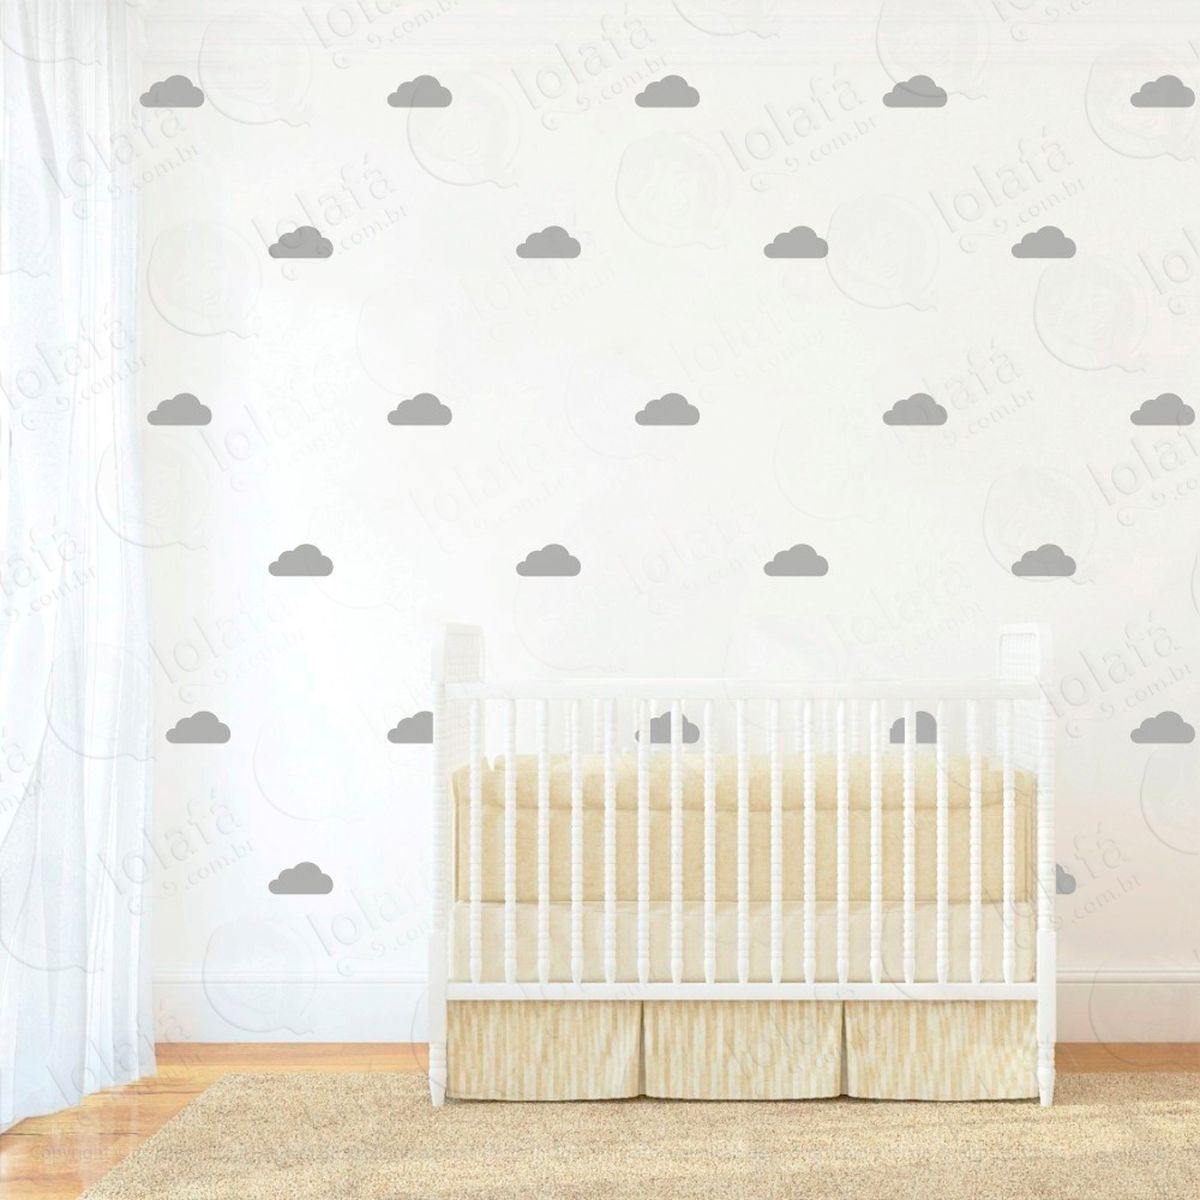 adesivos nuvens 120 peças adesivos para quarto de bebê infantil - mod:883